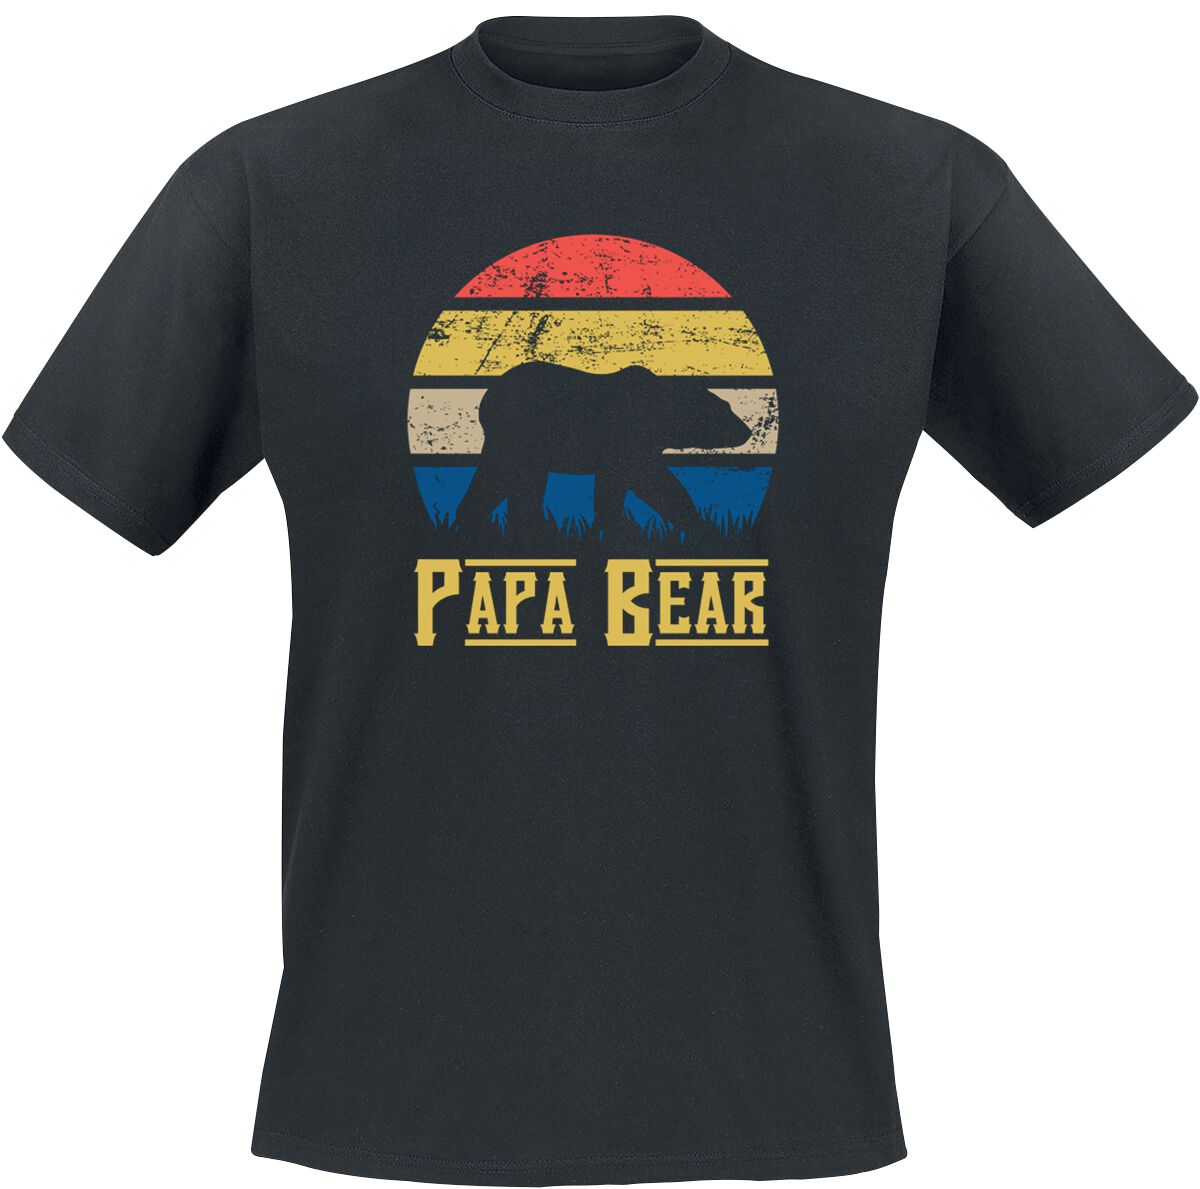 Familie & Freunde T-Shirt - Papa Bear - S bis 5XL - für Männer - Größe 5XL - schwarz